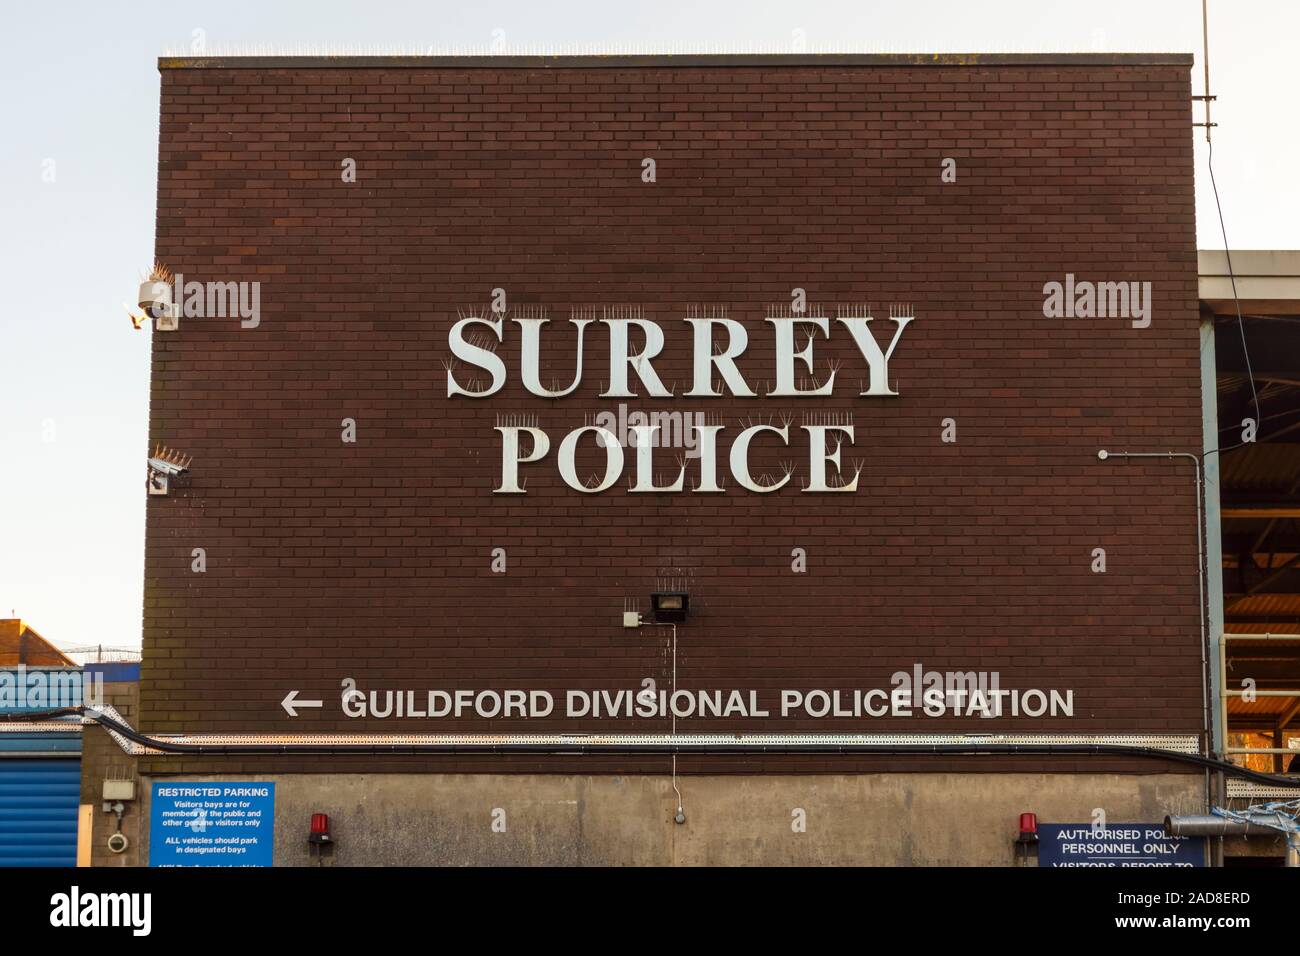 Zeichen für Polizei, Surrey Guildford gg Polizeistation an der lokalen Polizeistation in Guildford, Surrey, Südosten, England, Grossbritannien Stockfoto